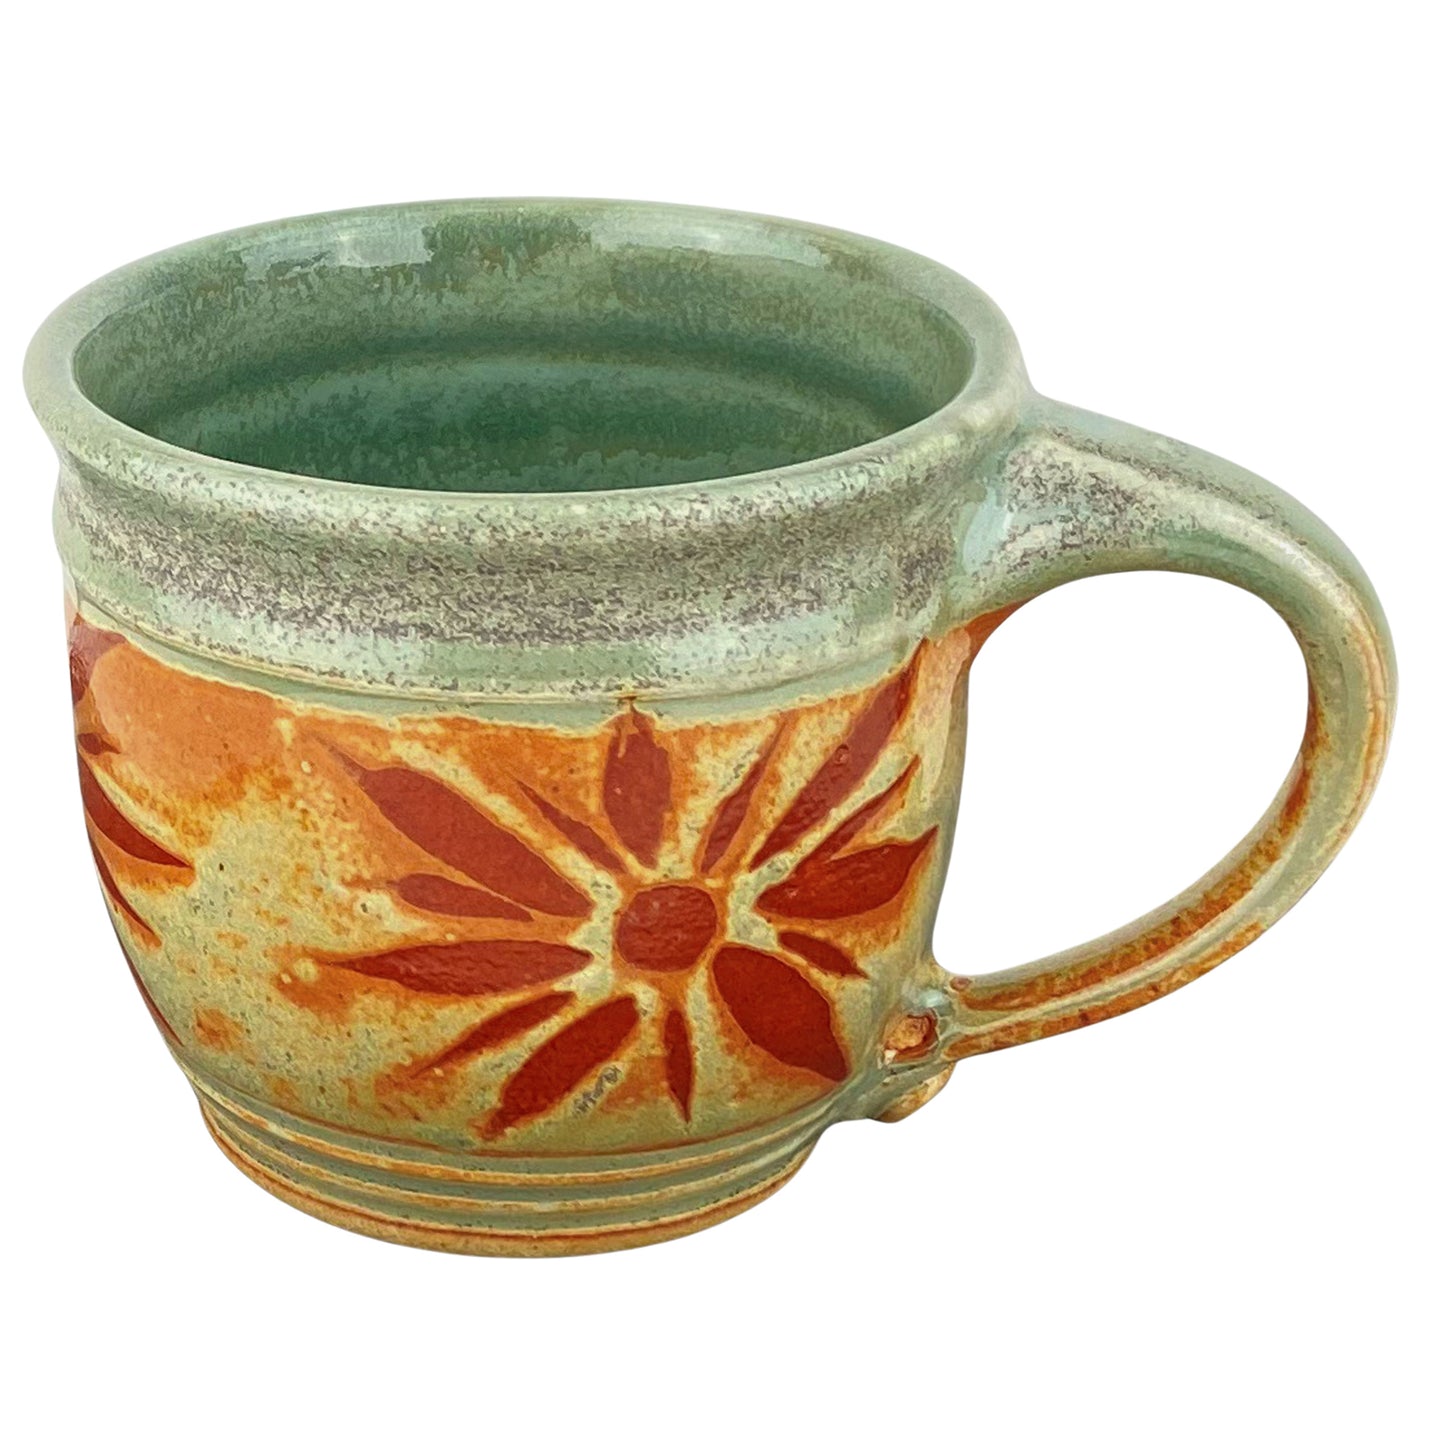 14 oz. Sunburst Stoneware Mug